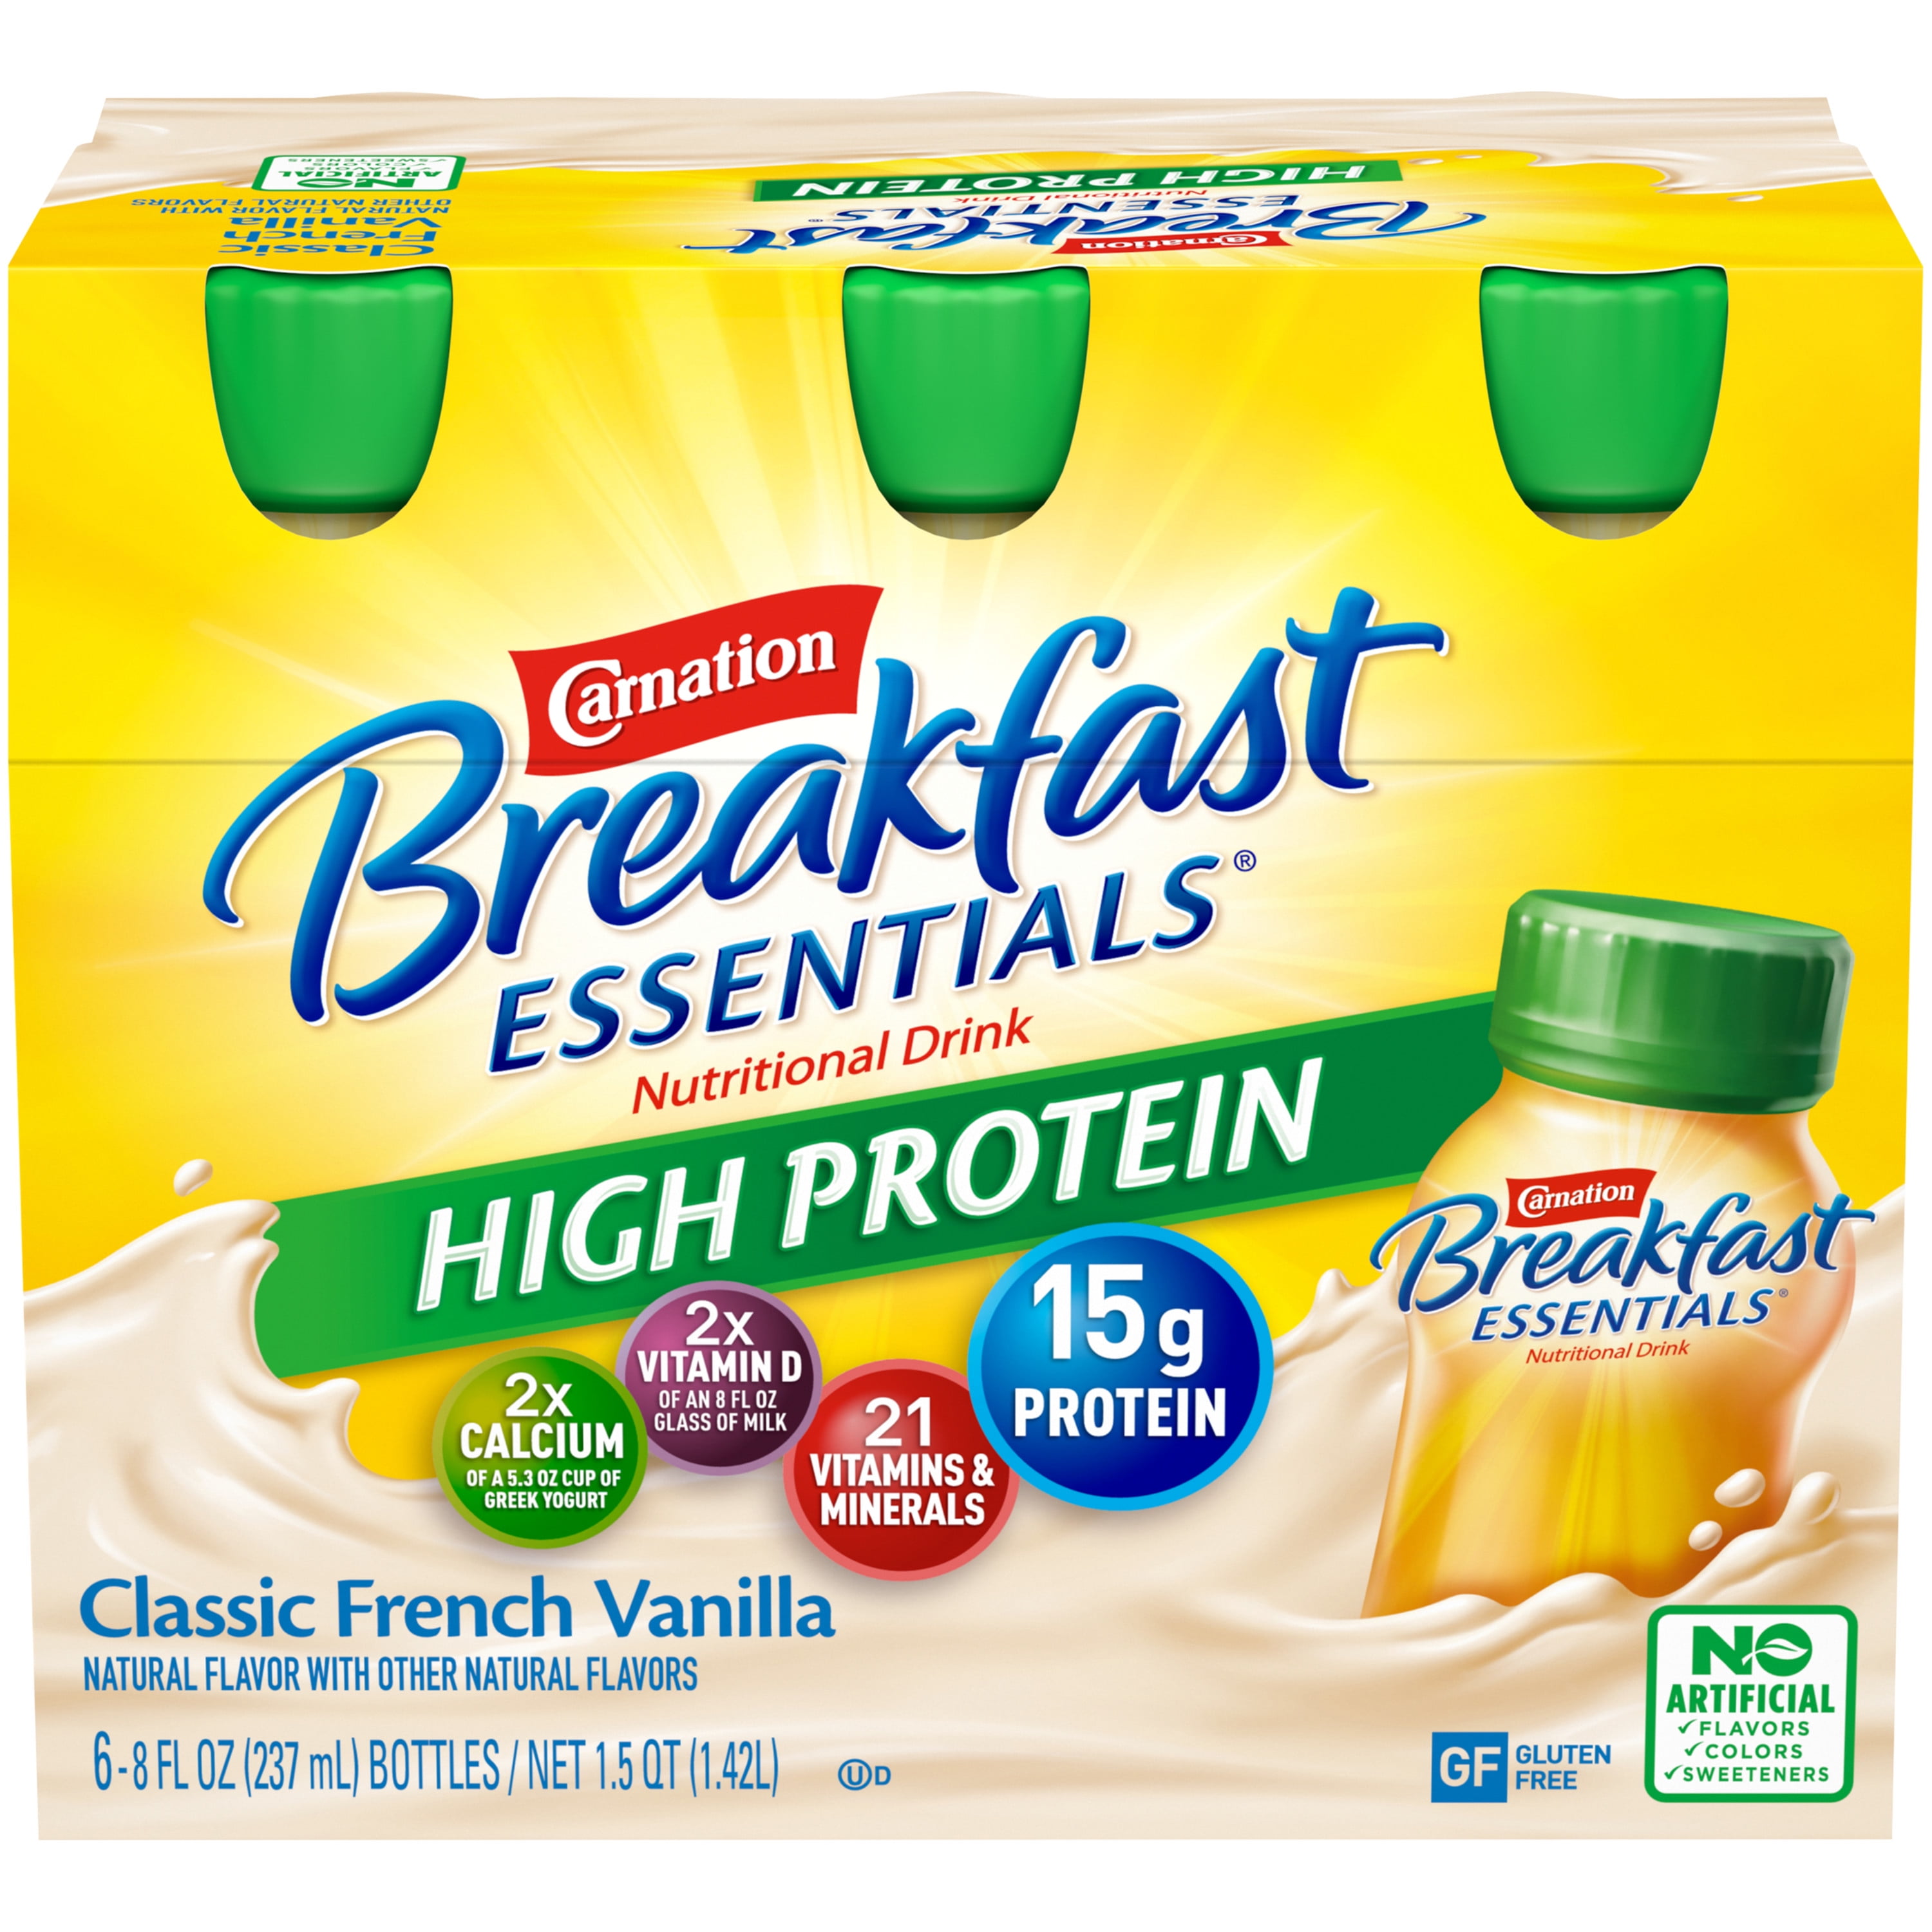 Carnation Breakfast Essentials® High Protein Nutritional Drink